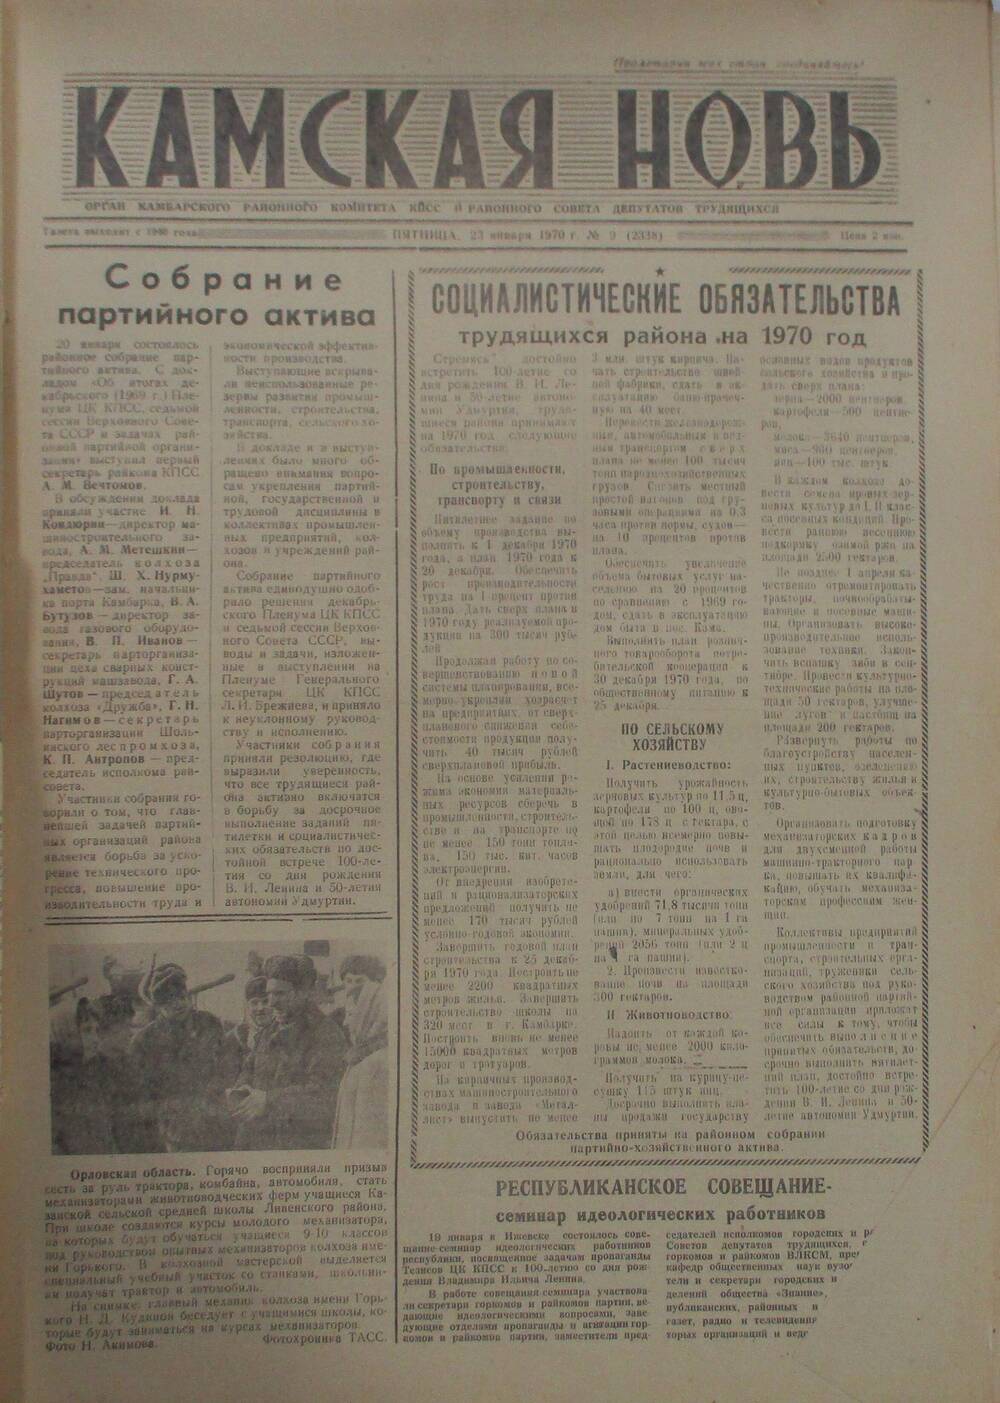 Газеты Камская новь за 1970 год. с №1 по №83., №9.